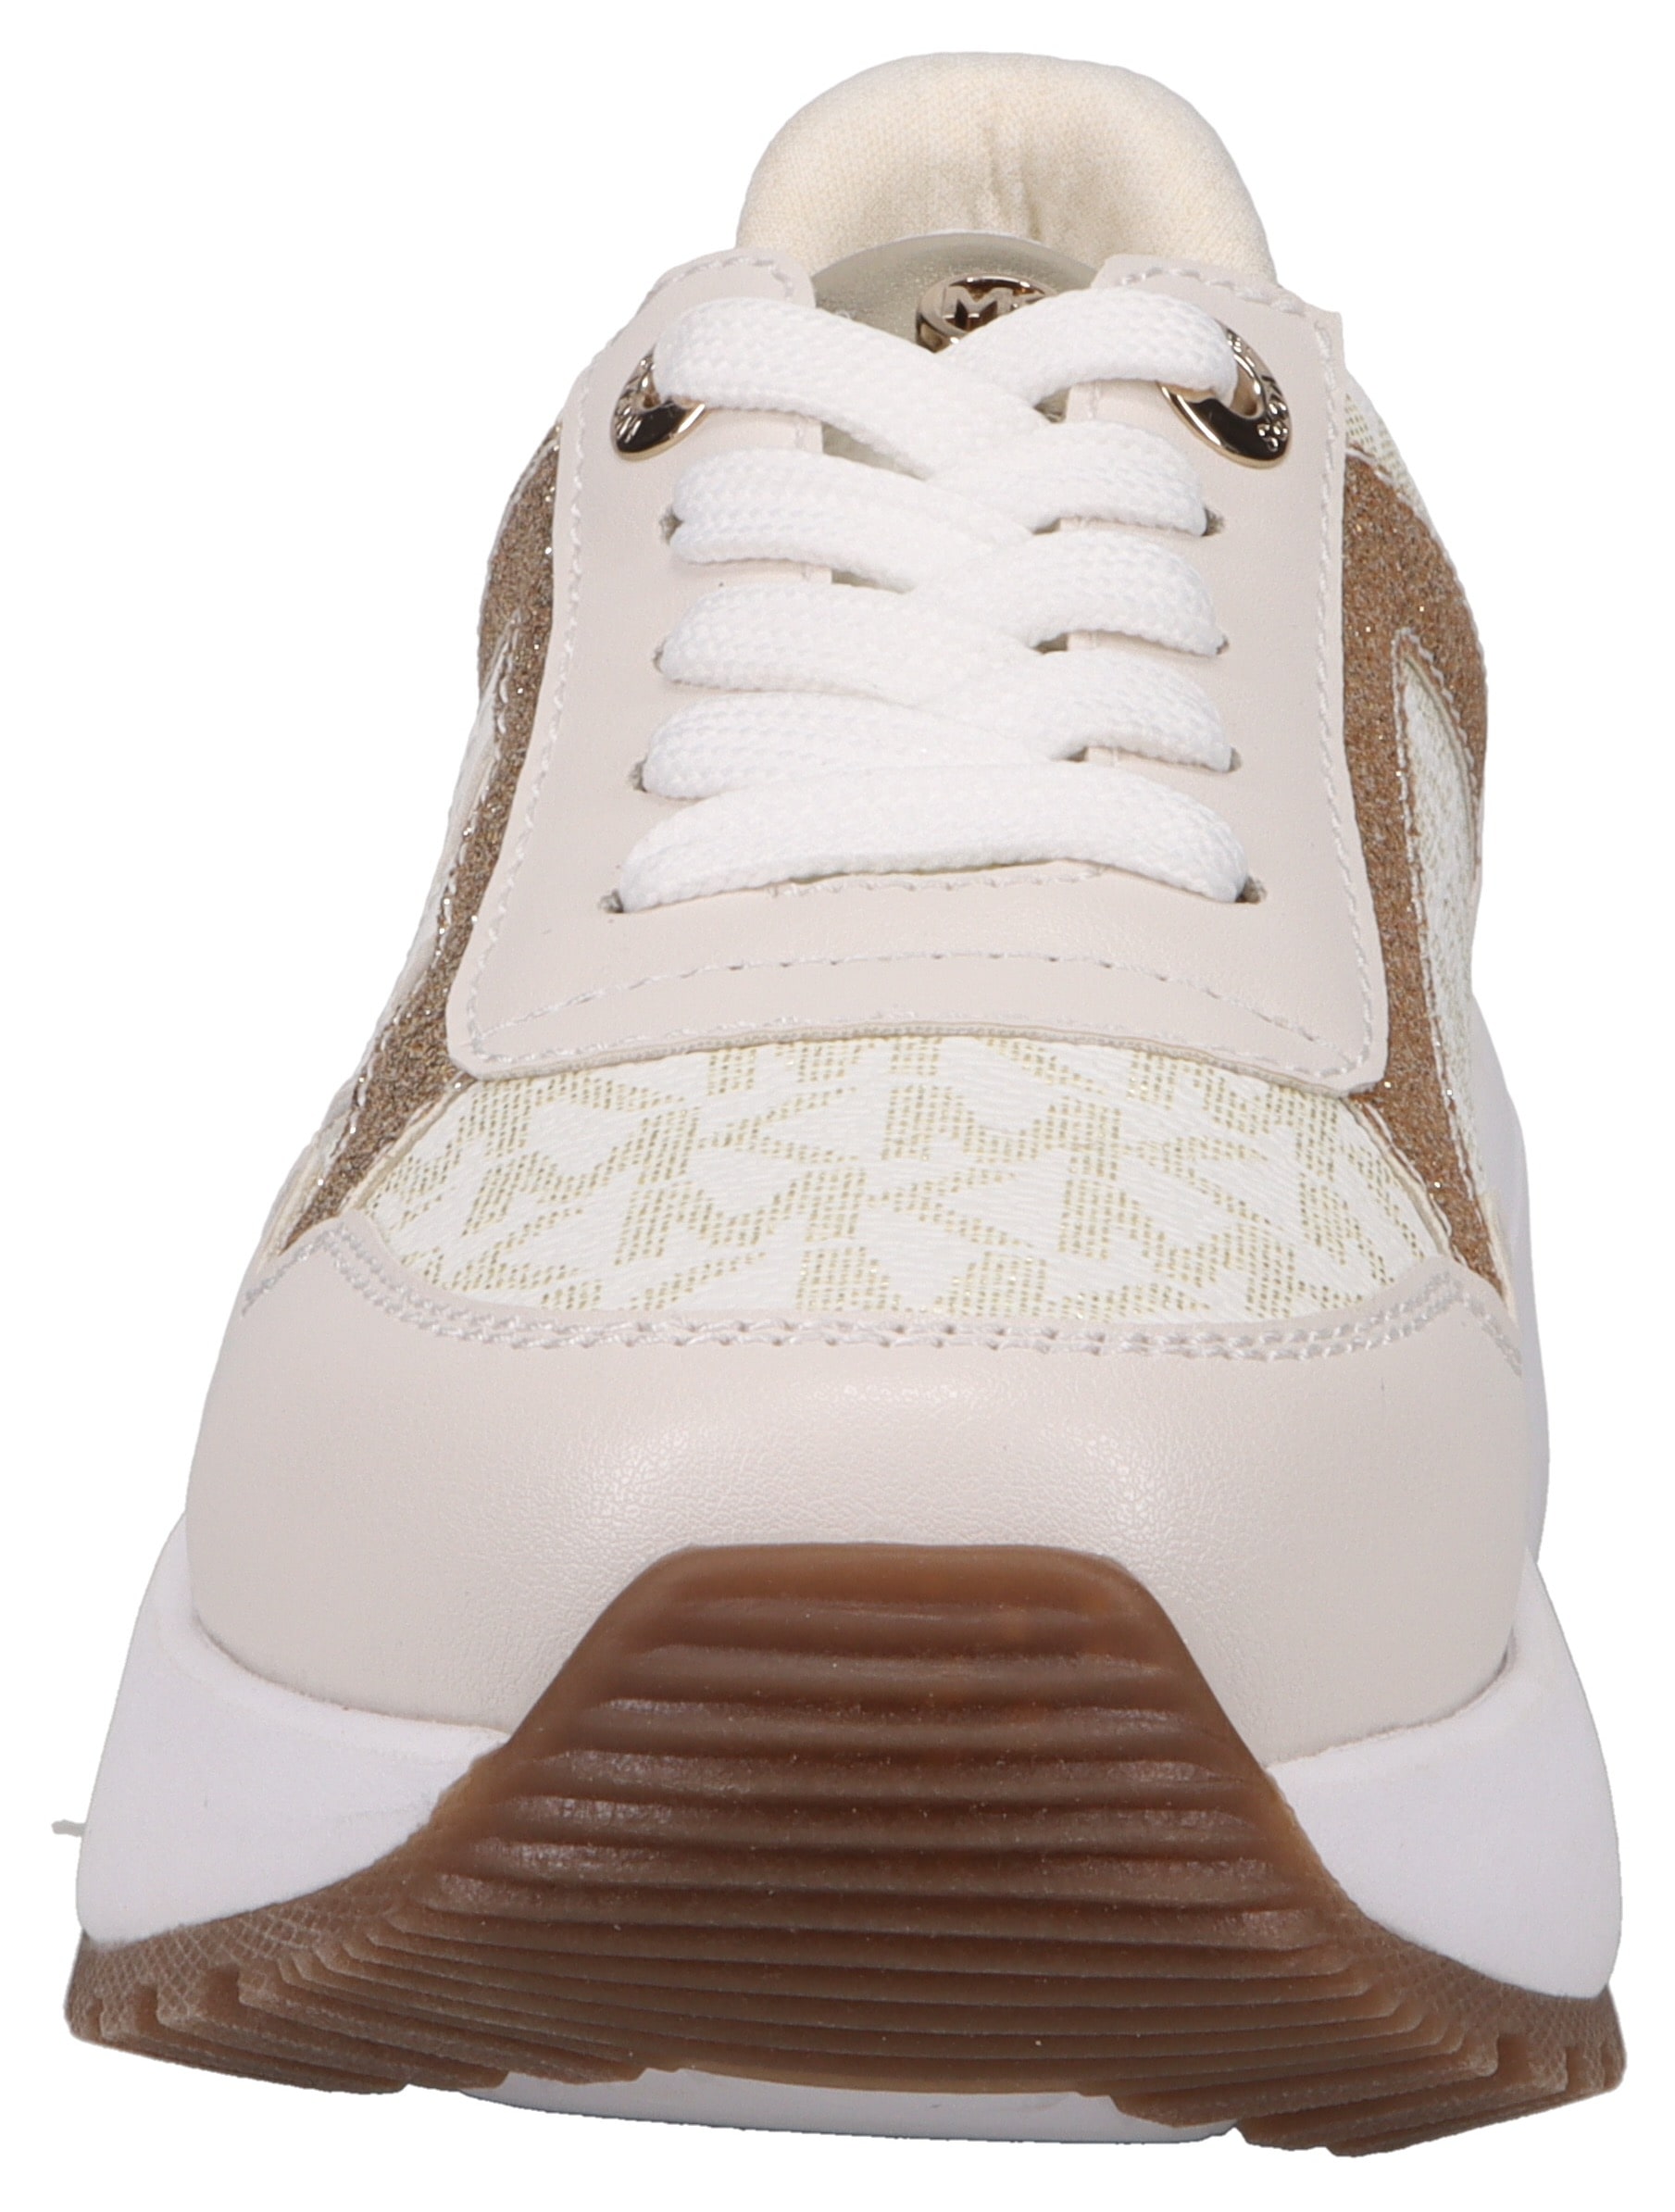 MICHAEL KORS KIDS Sneaker »COSMO MADDY«, mit goldfarbenen Deteails, Freizeitschuh, Halbschuh, Schnürschuh